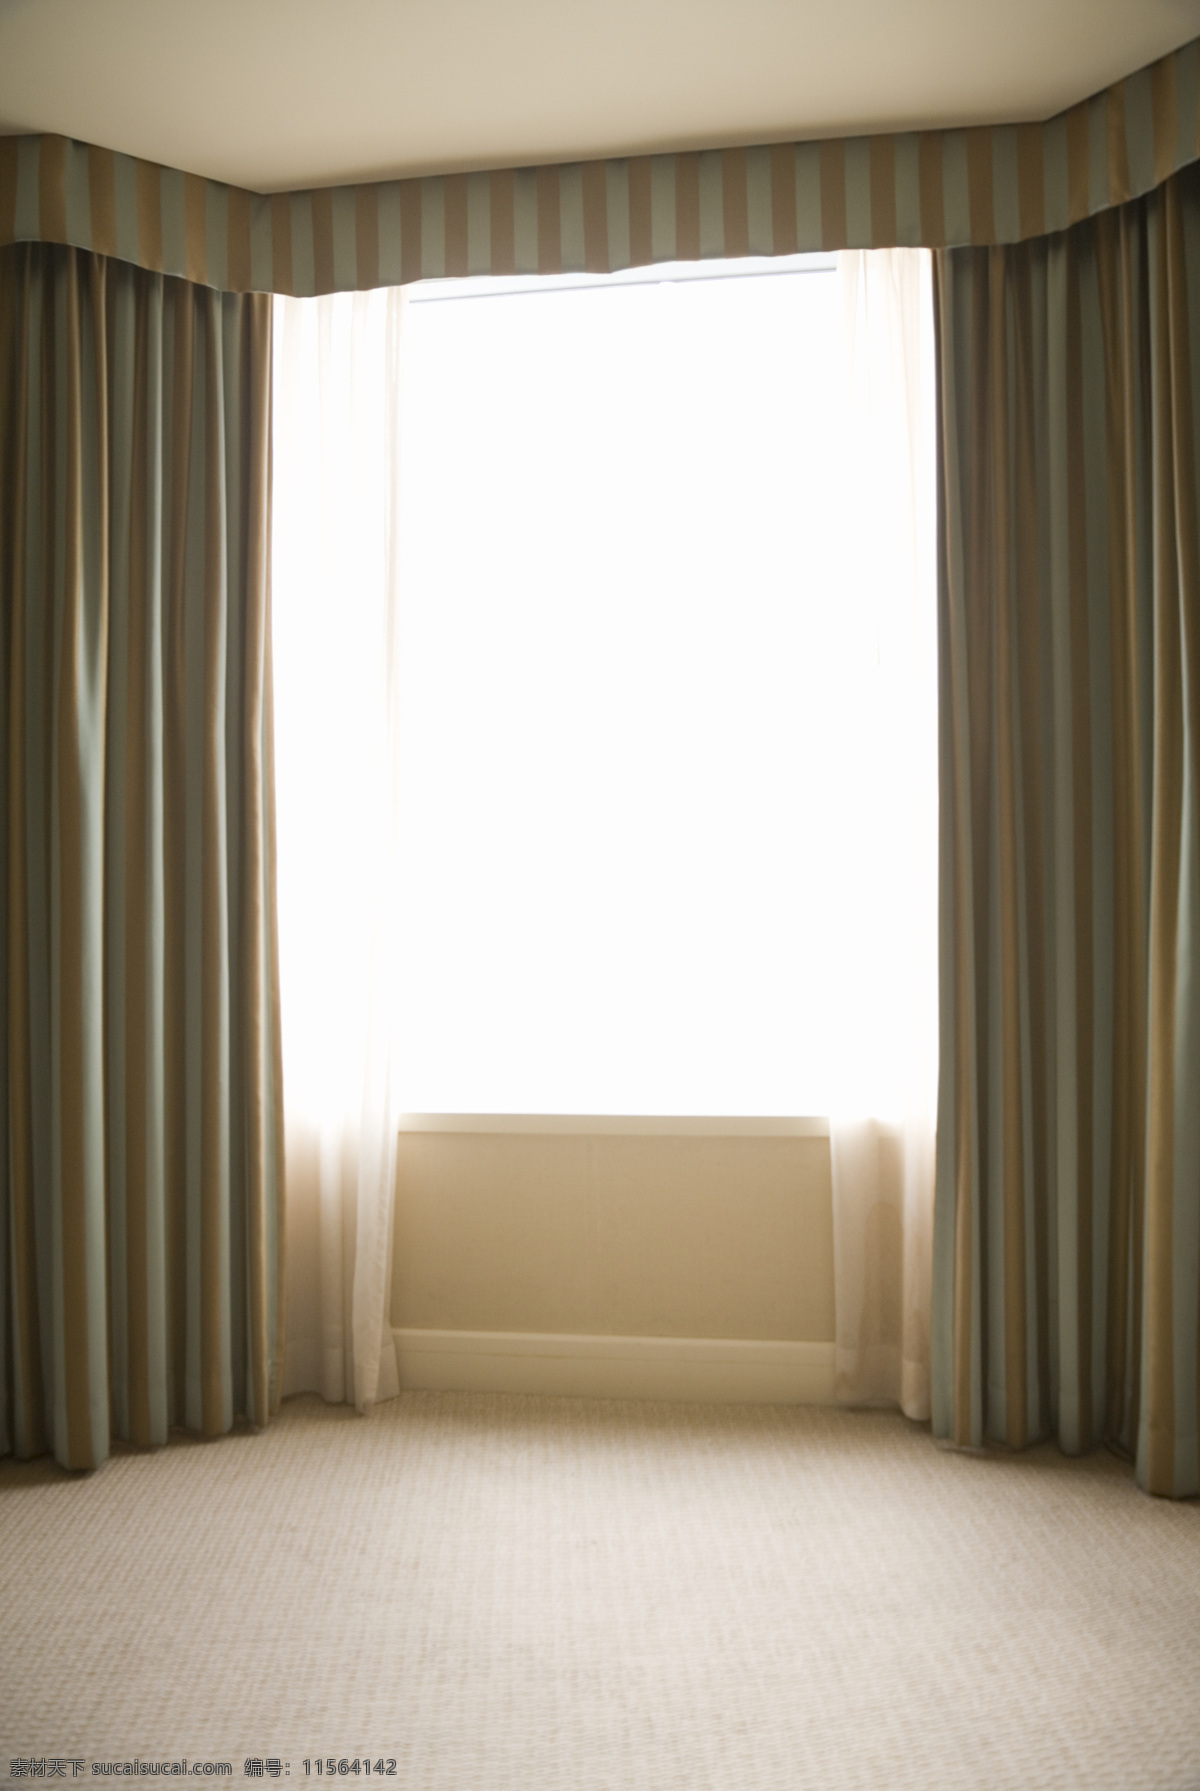 酒店 窗户 落地 窗帘 旅馆 房间 落地窗帘 白色窗帘 地板 干净整洁 布帘 高清图片 室内设计 环境家居